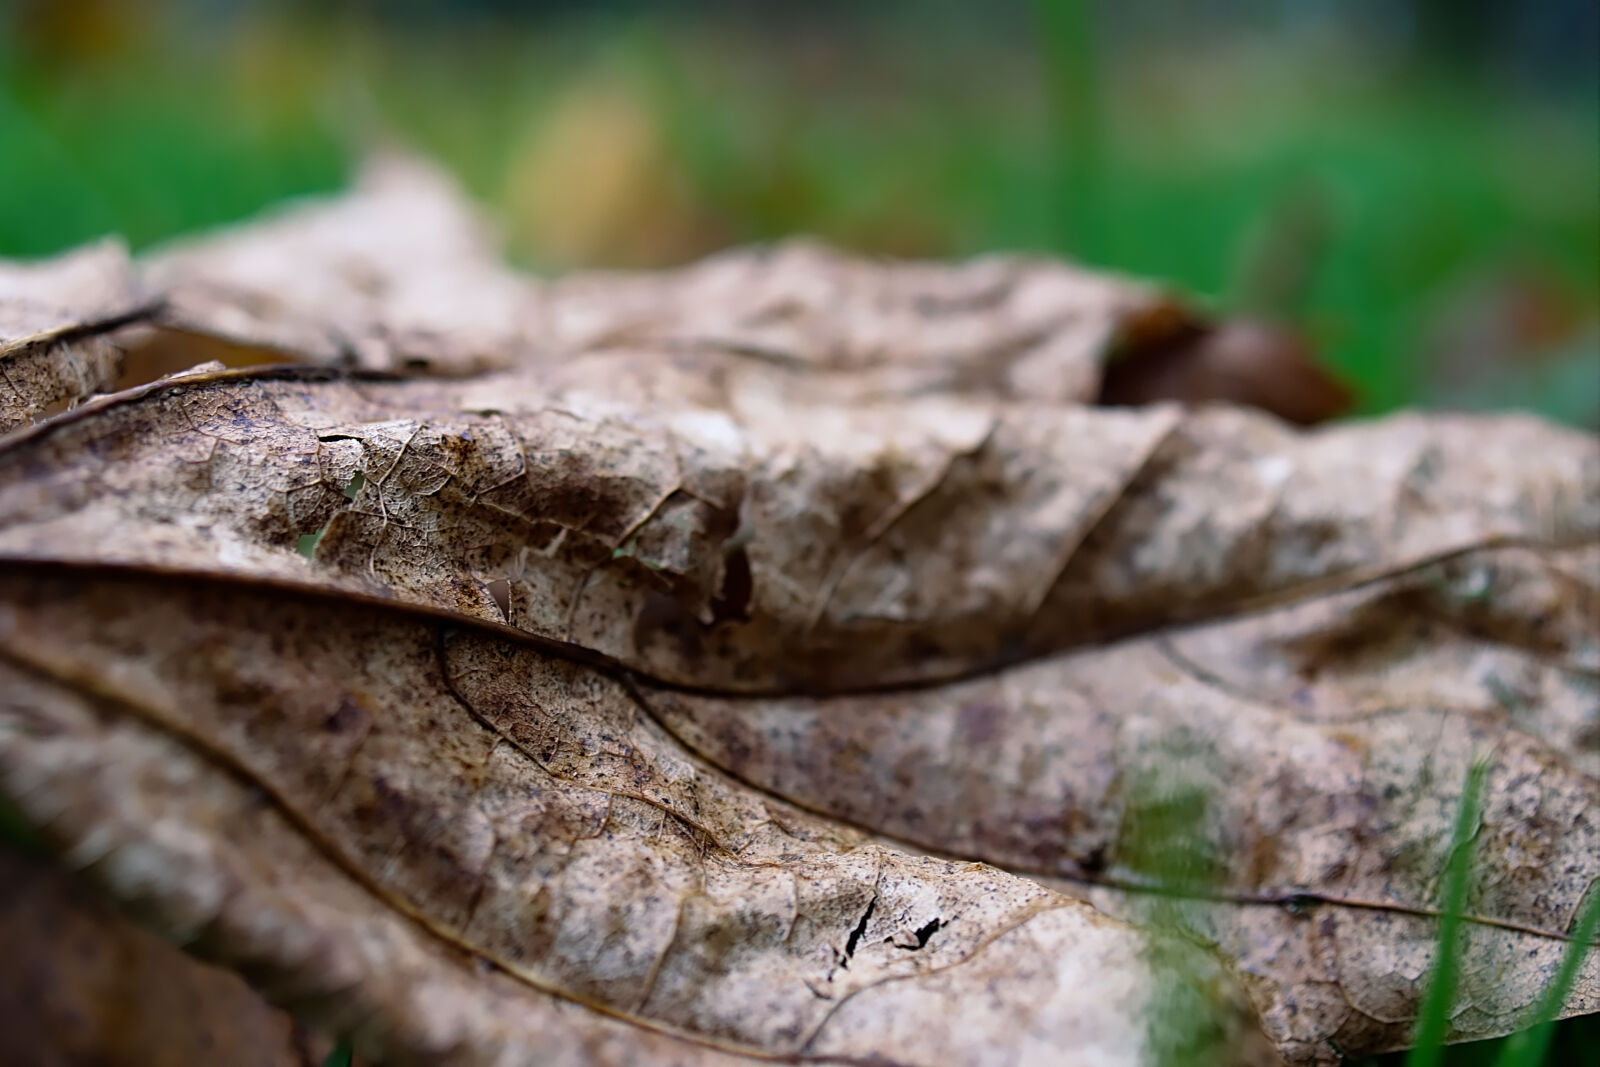 Sony SLT-A68 + Sony DT 30mm F2.8 Macro SAM sample photo. Autumn, autumn, leaf, brown photography